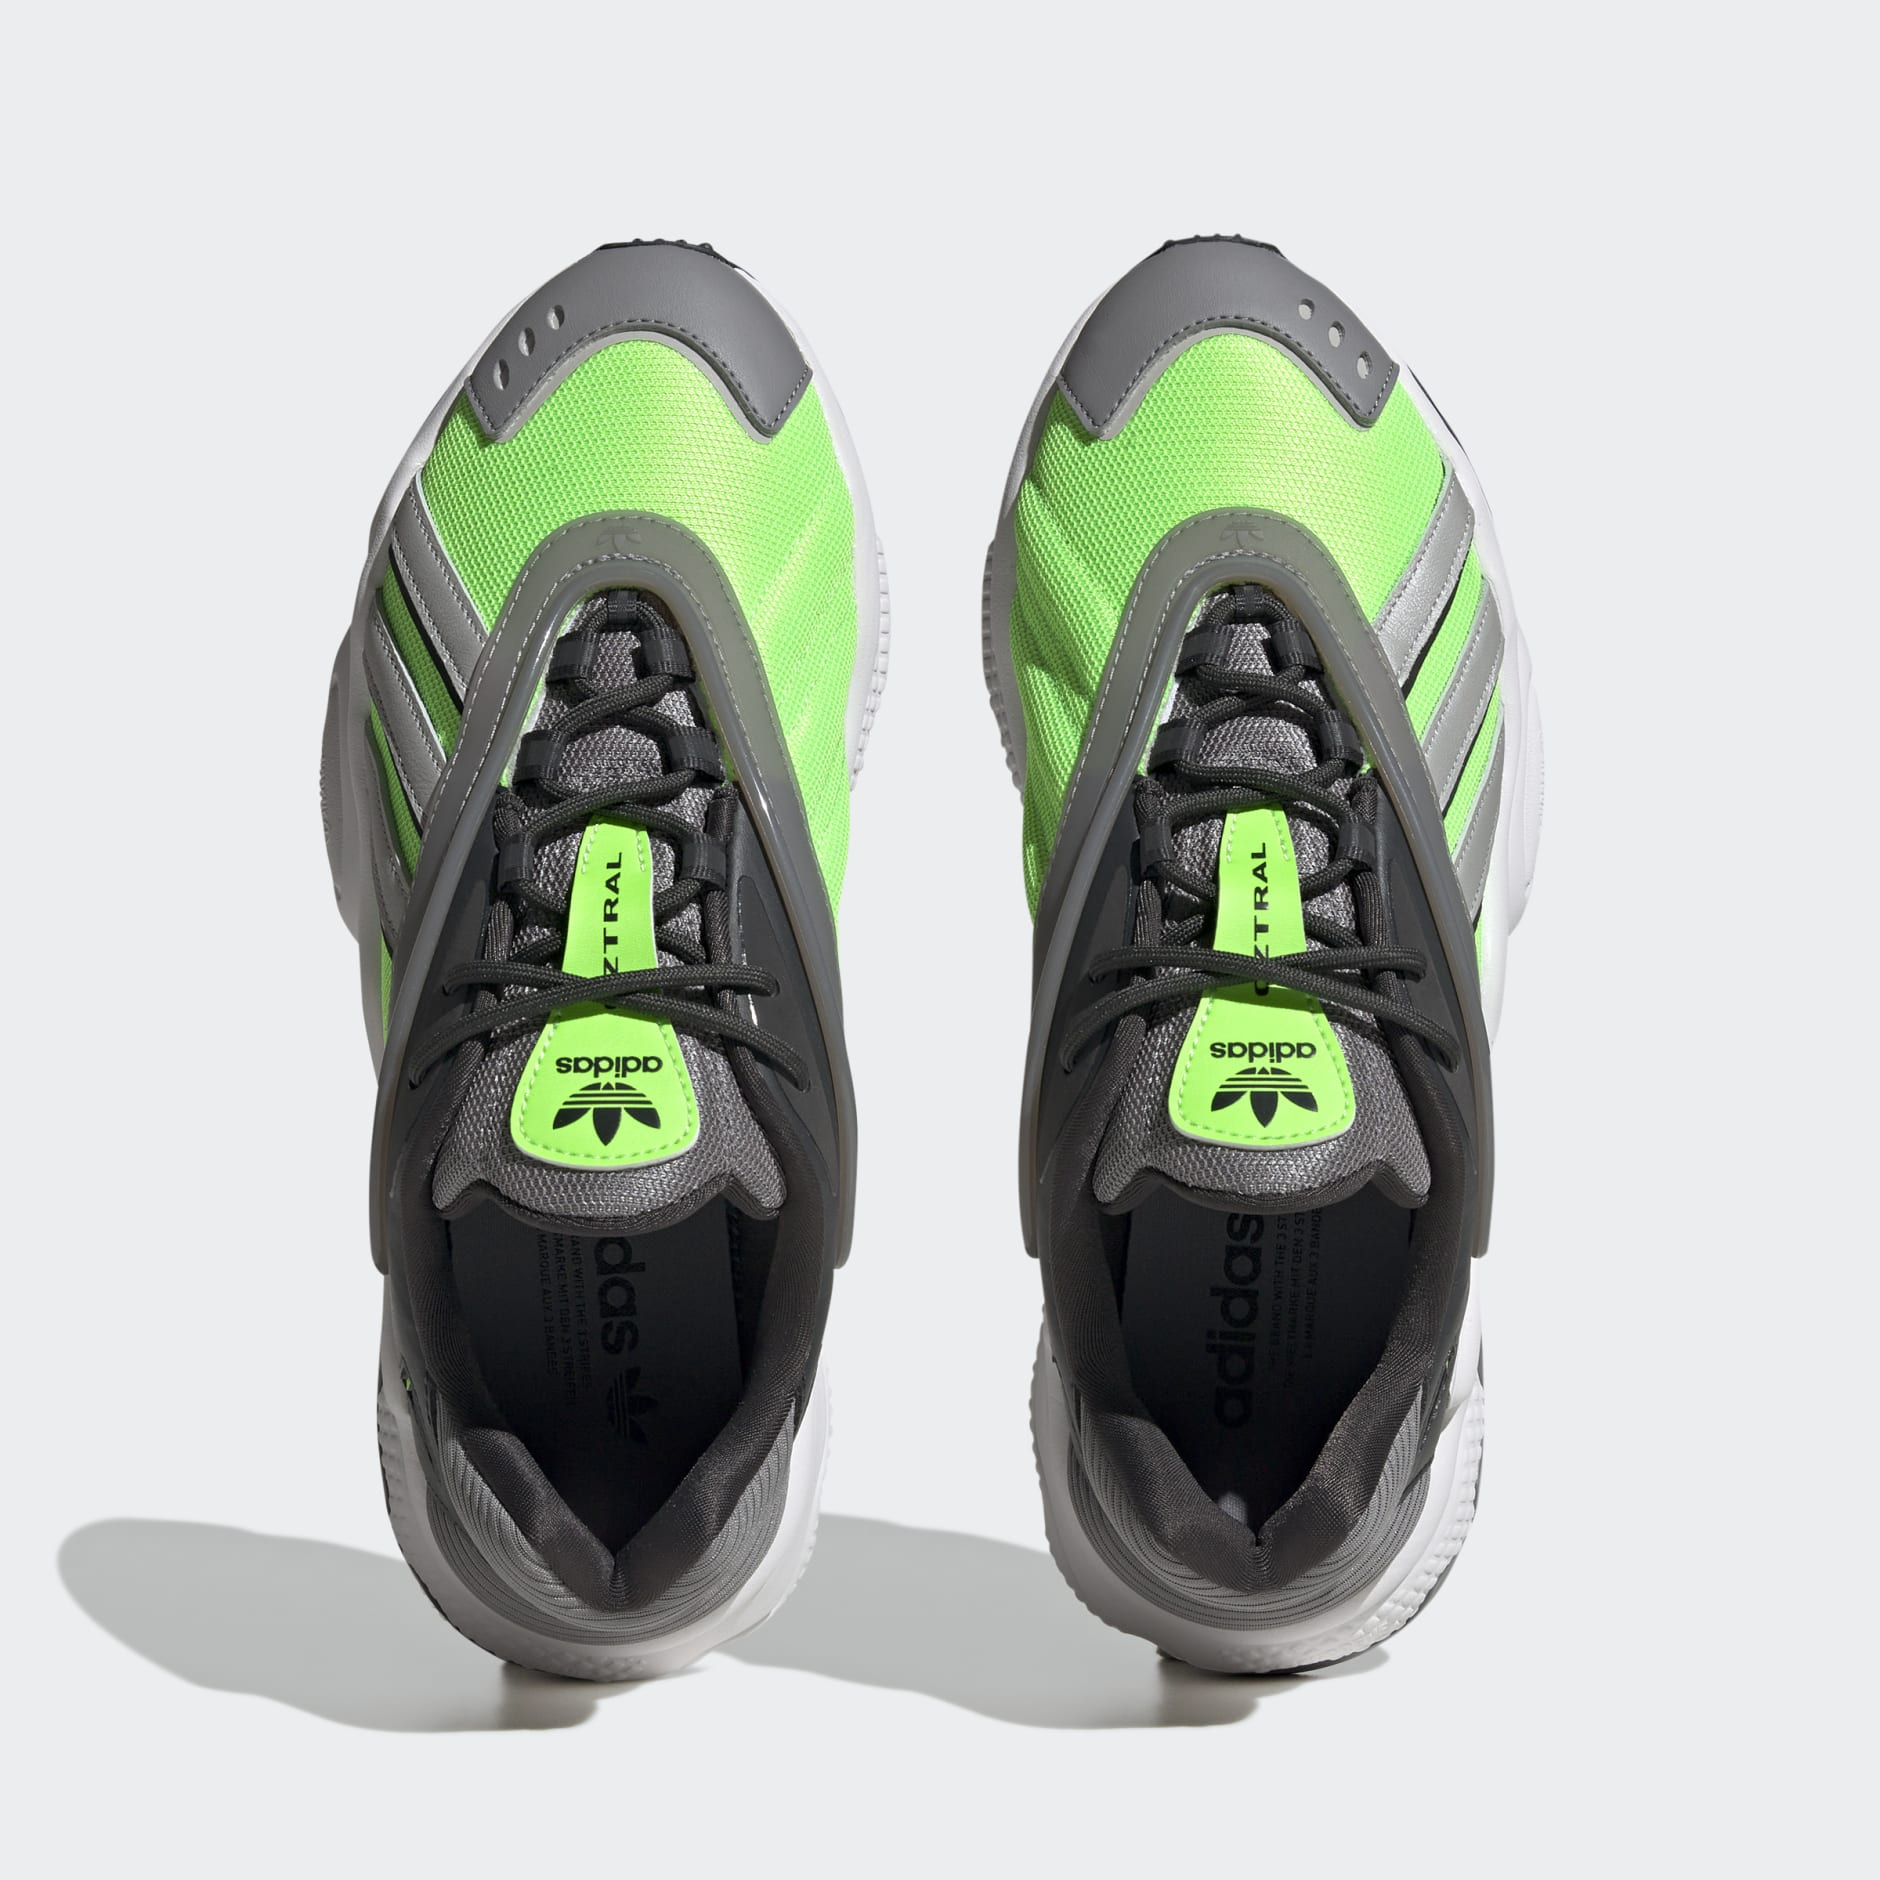 Adidas oztral. Адидас oztral. Oztral черно зеленые. Кроссовки adidas oztral id9791 male Black/Black/Grey.